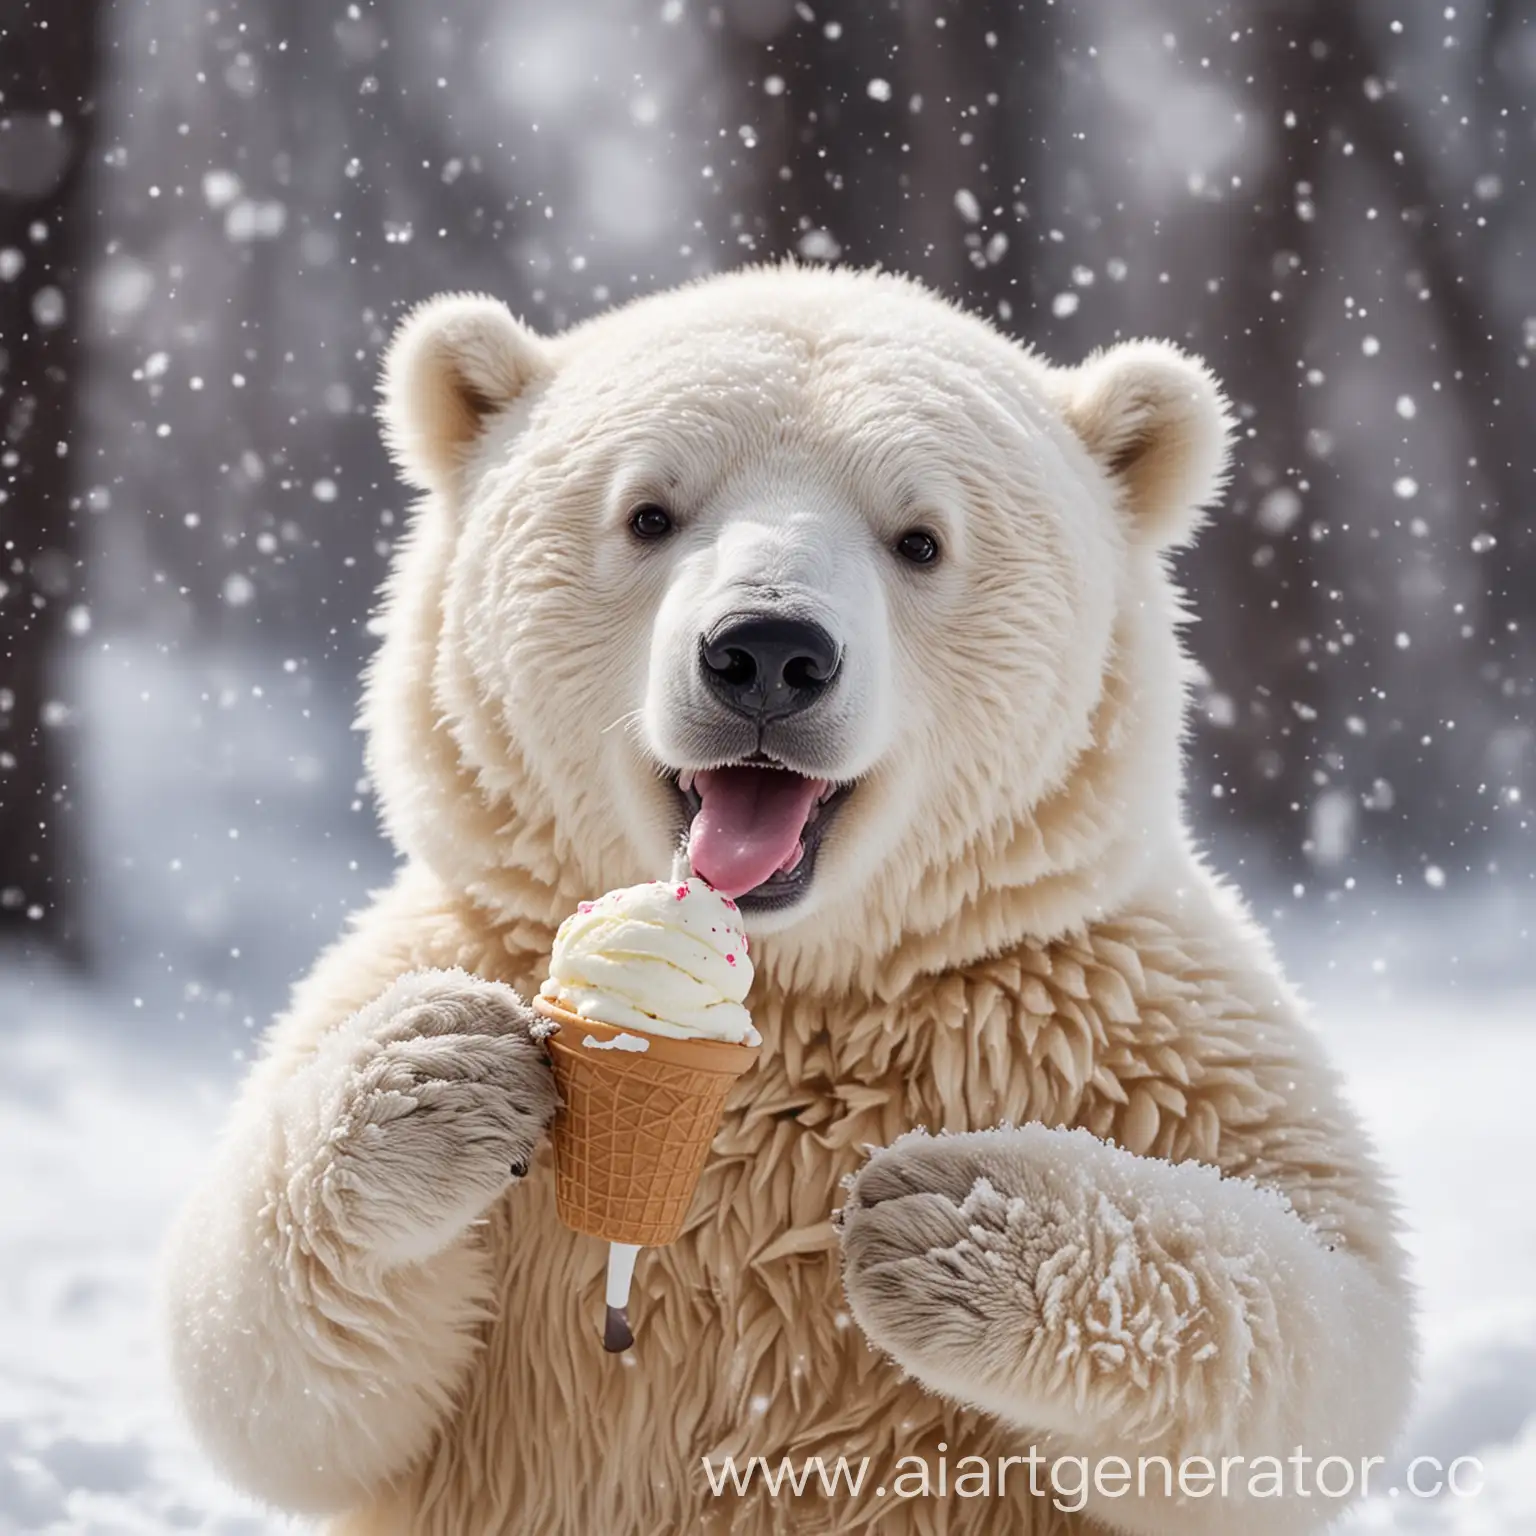 Joyful-Polar-Bear-Enjoying-Ice-Cream-in-a-Winter-Wonderland